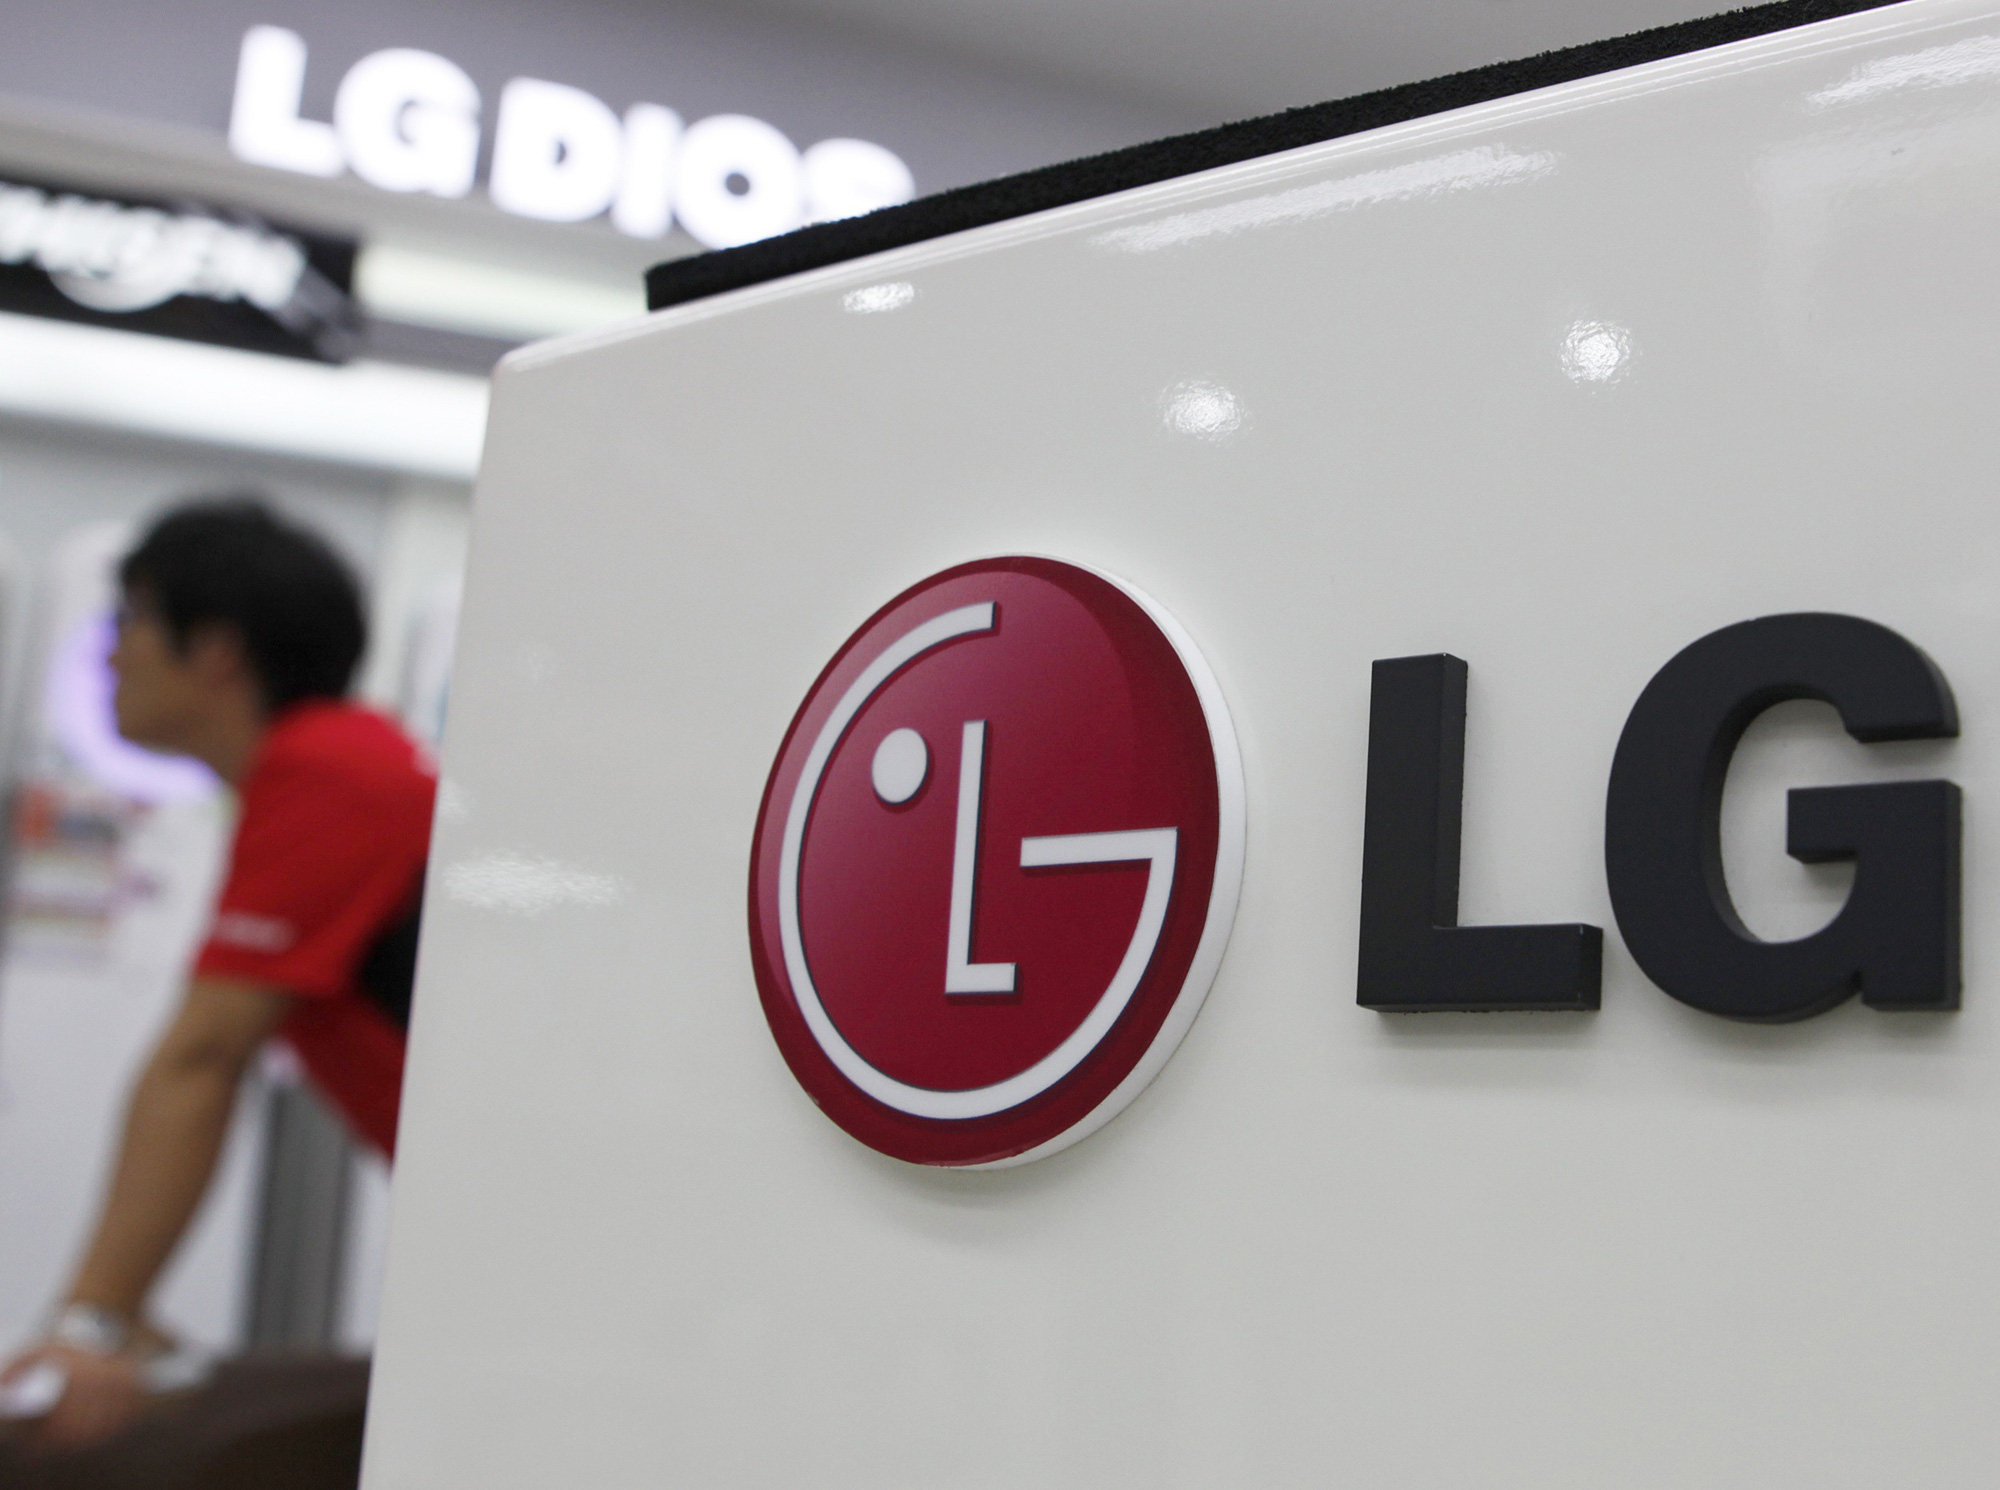 Sau nhiều năm chịu lỗ, cuối cùng LG cũng quyết định đóng mảng kinh doanh di động. Và quyết định này đã giúp LG đạt doanh thu kỷ lục trong quý 2. Ảnh: @Pixabay.